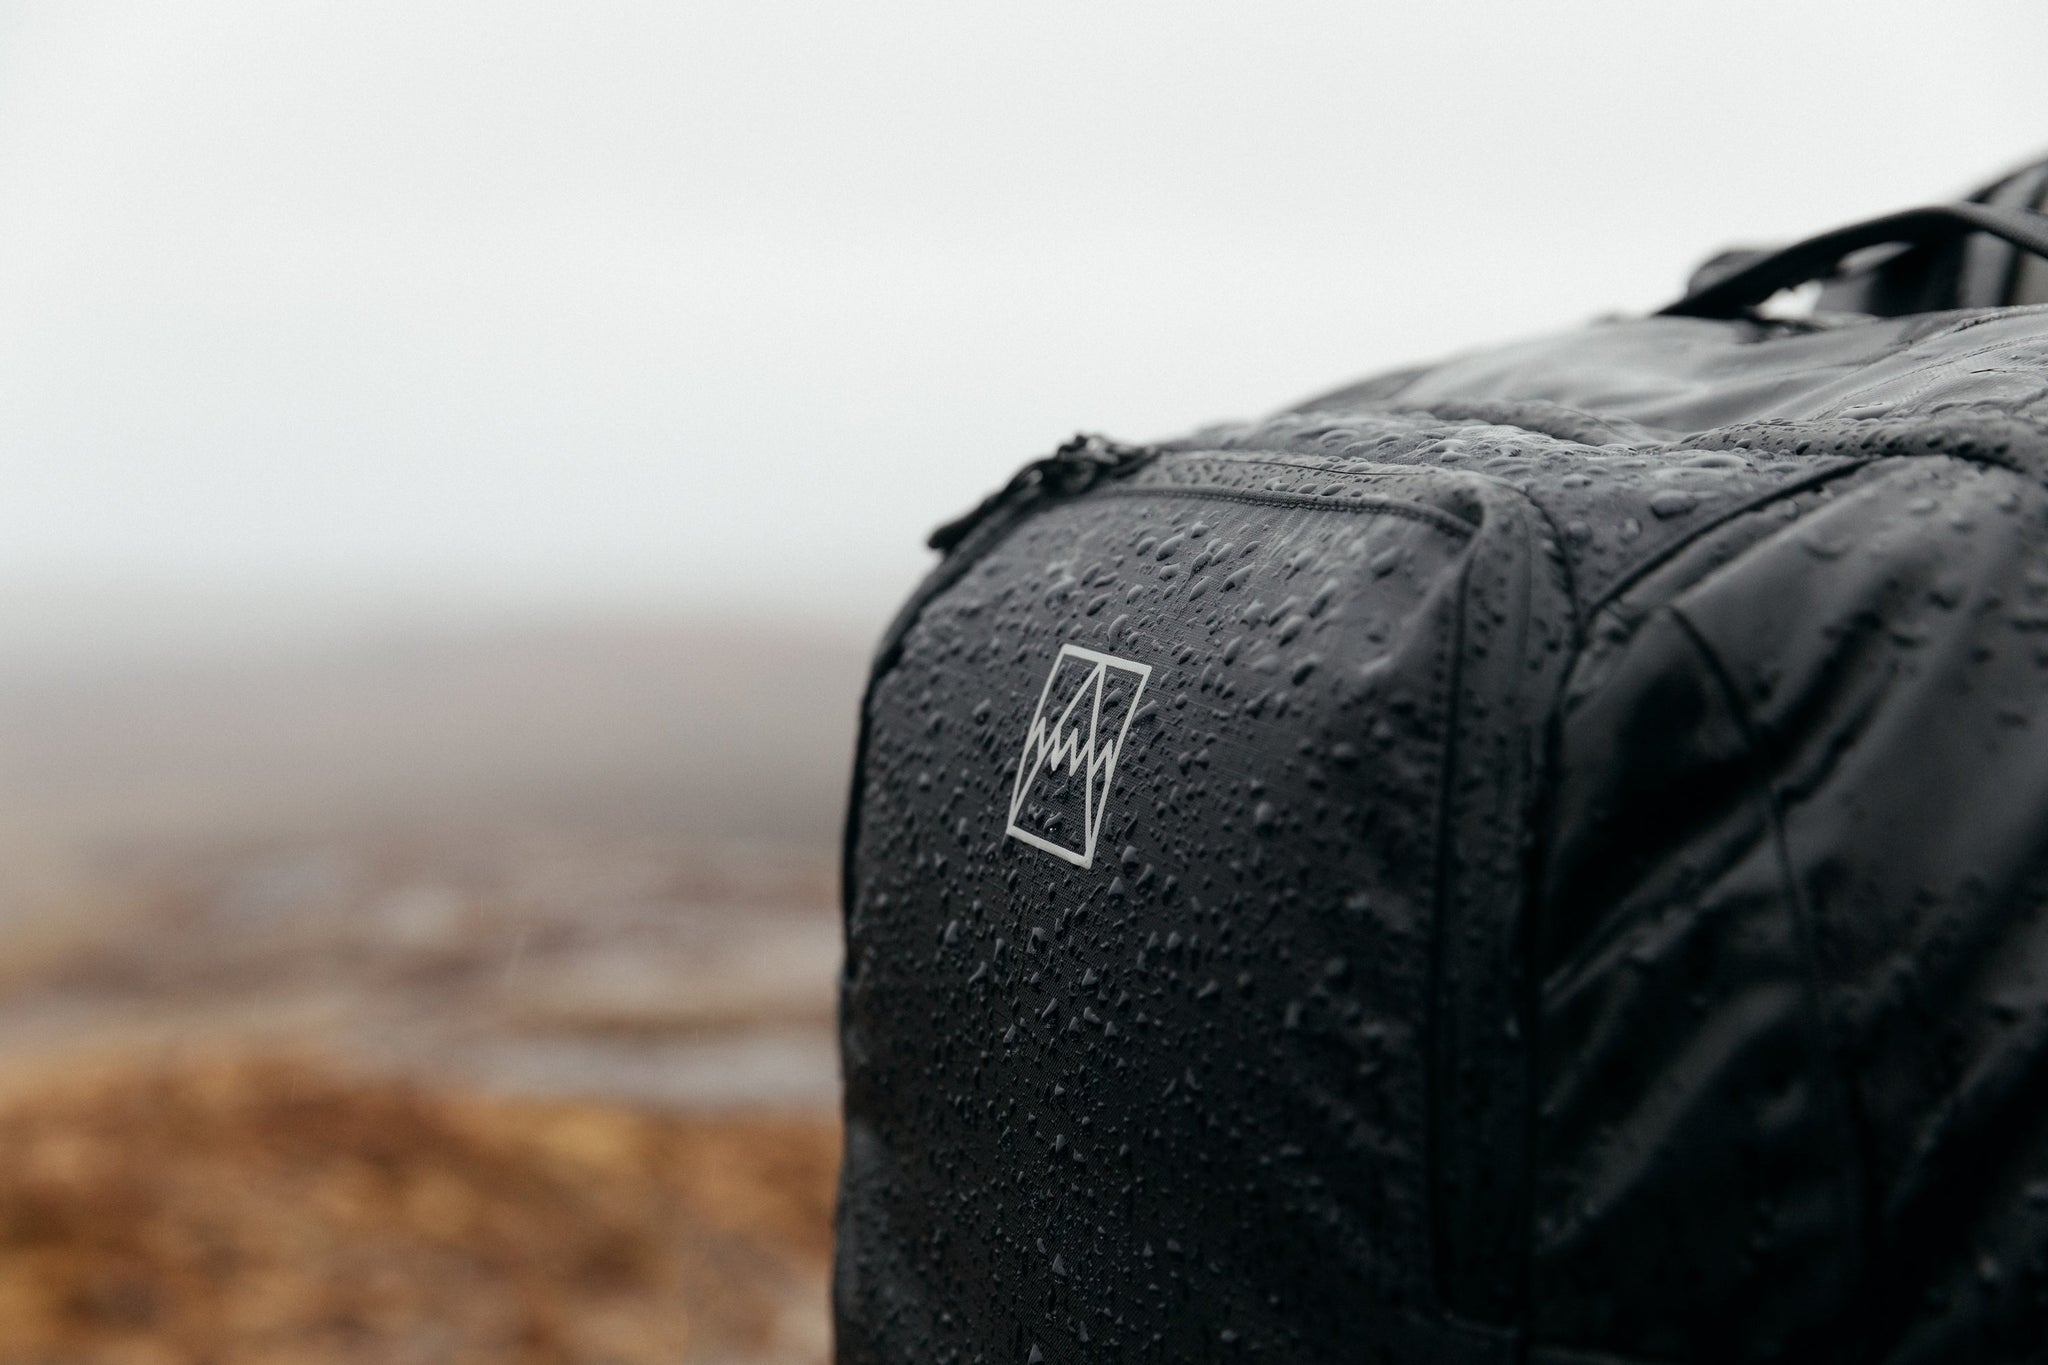 Black backpack in the rain